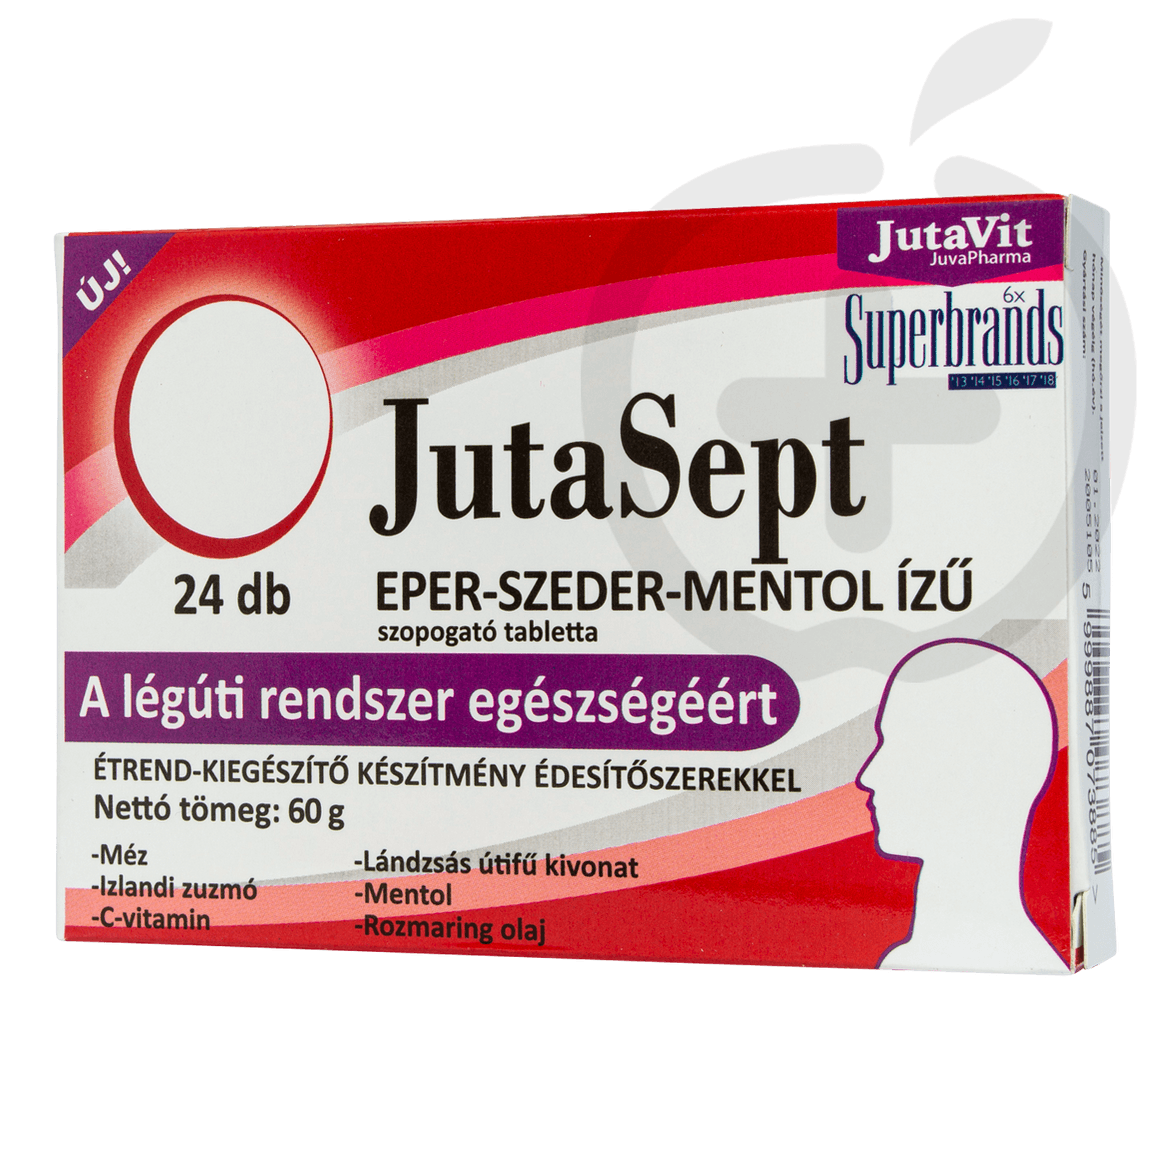 Jutavit Jutasept eper-szeder-mentol ízű szopogató tabletta